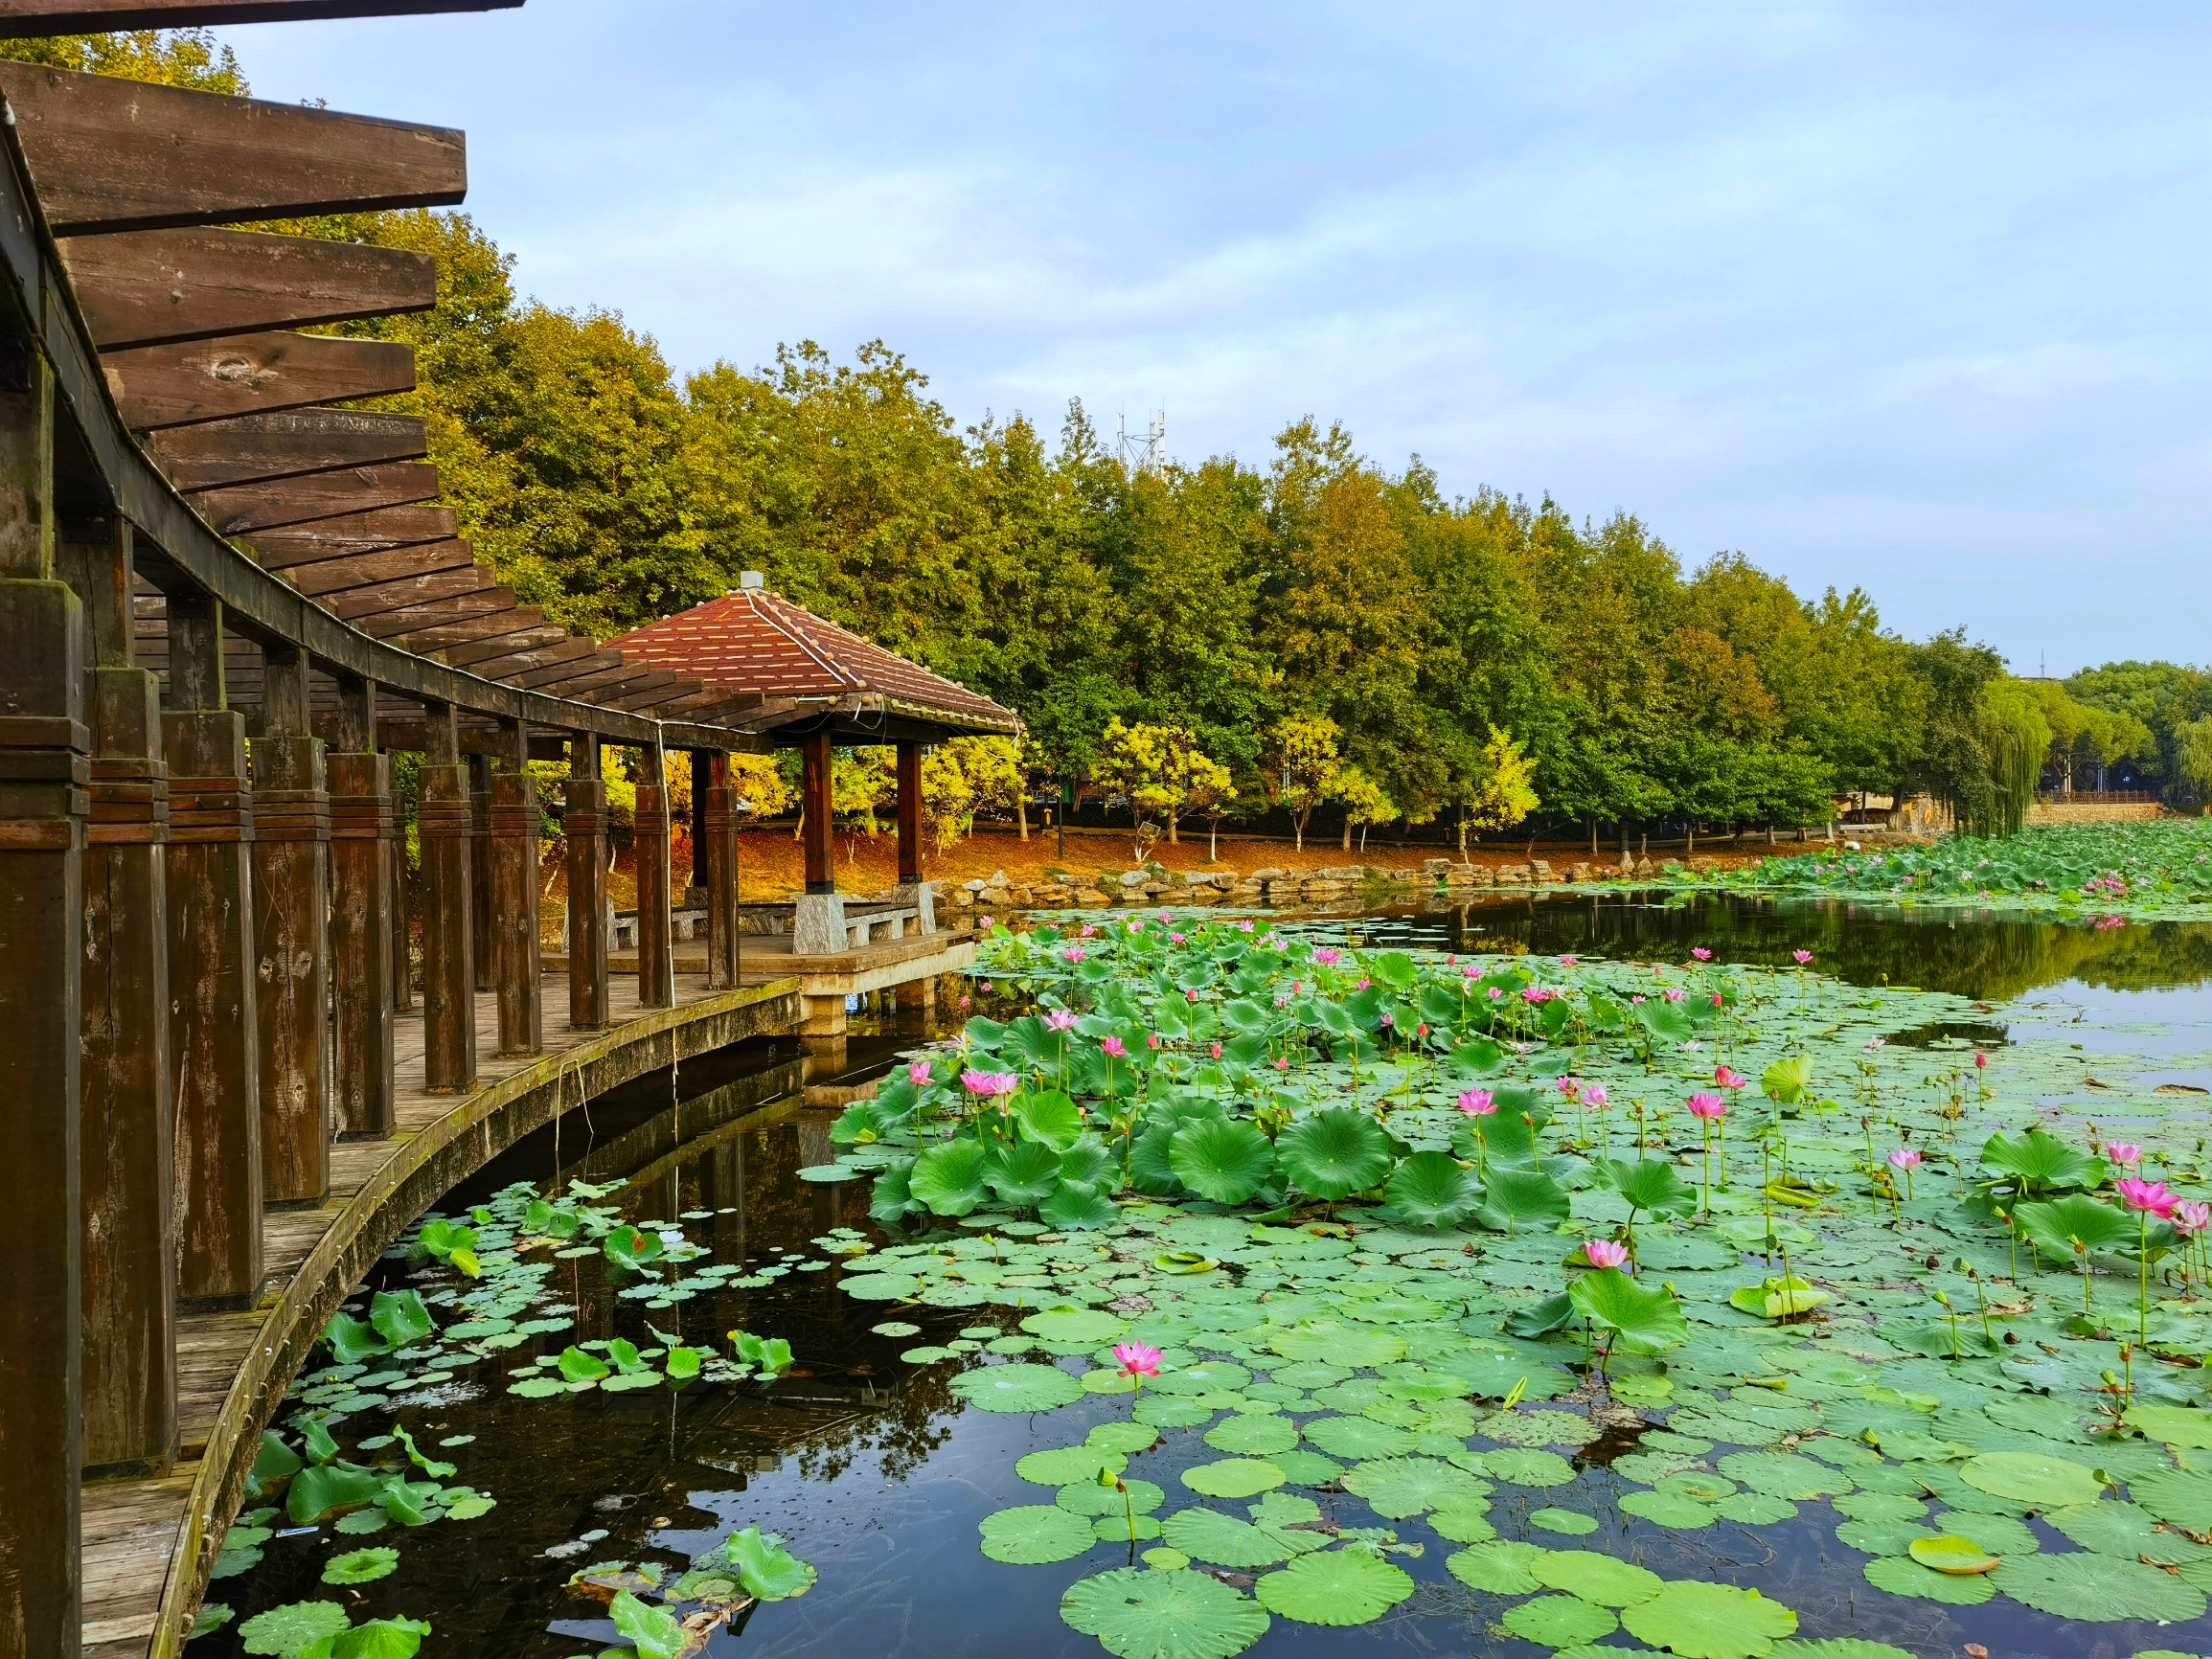 雁家湖植物园位于德安县城的中心地段蒲塘大道，因历史景观“蒲塘落雁”而得名。设有亲水平台、休闲广场、艺